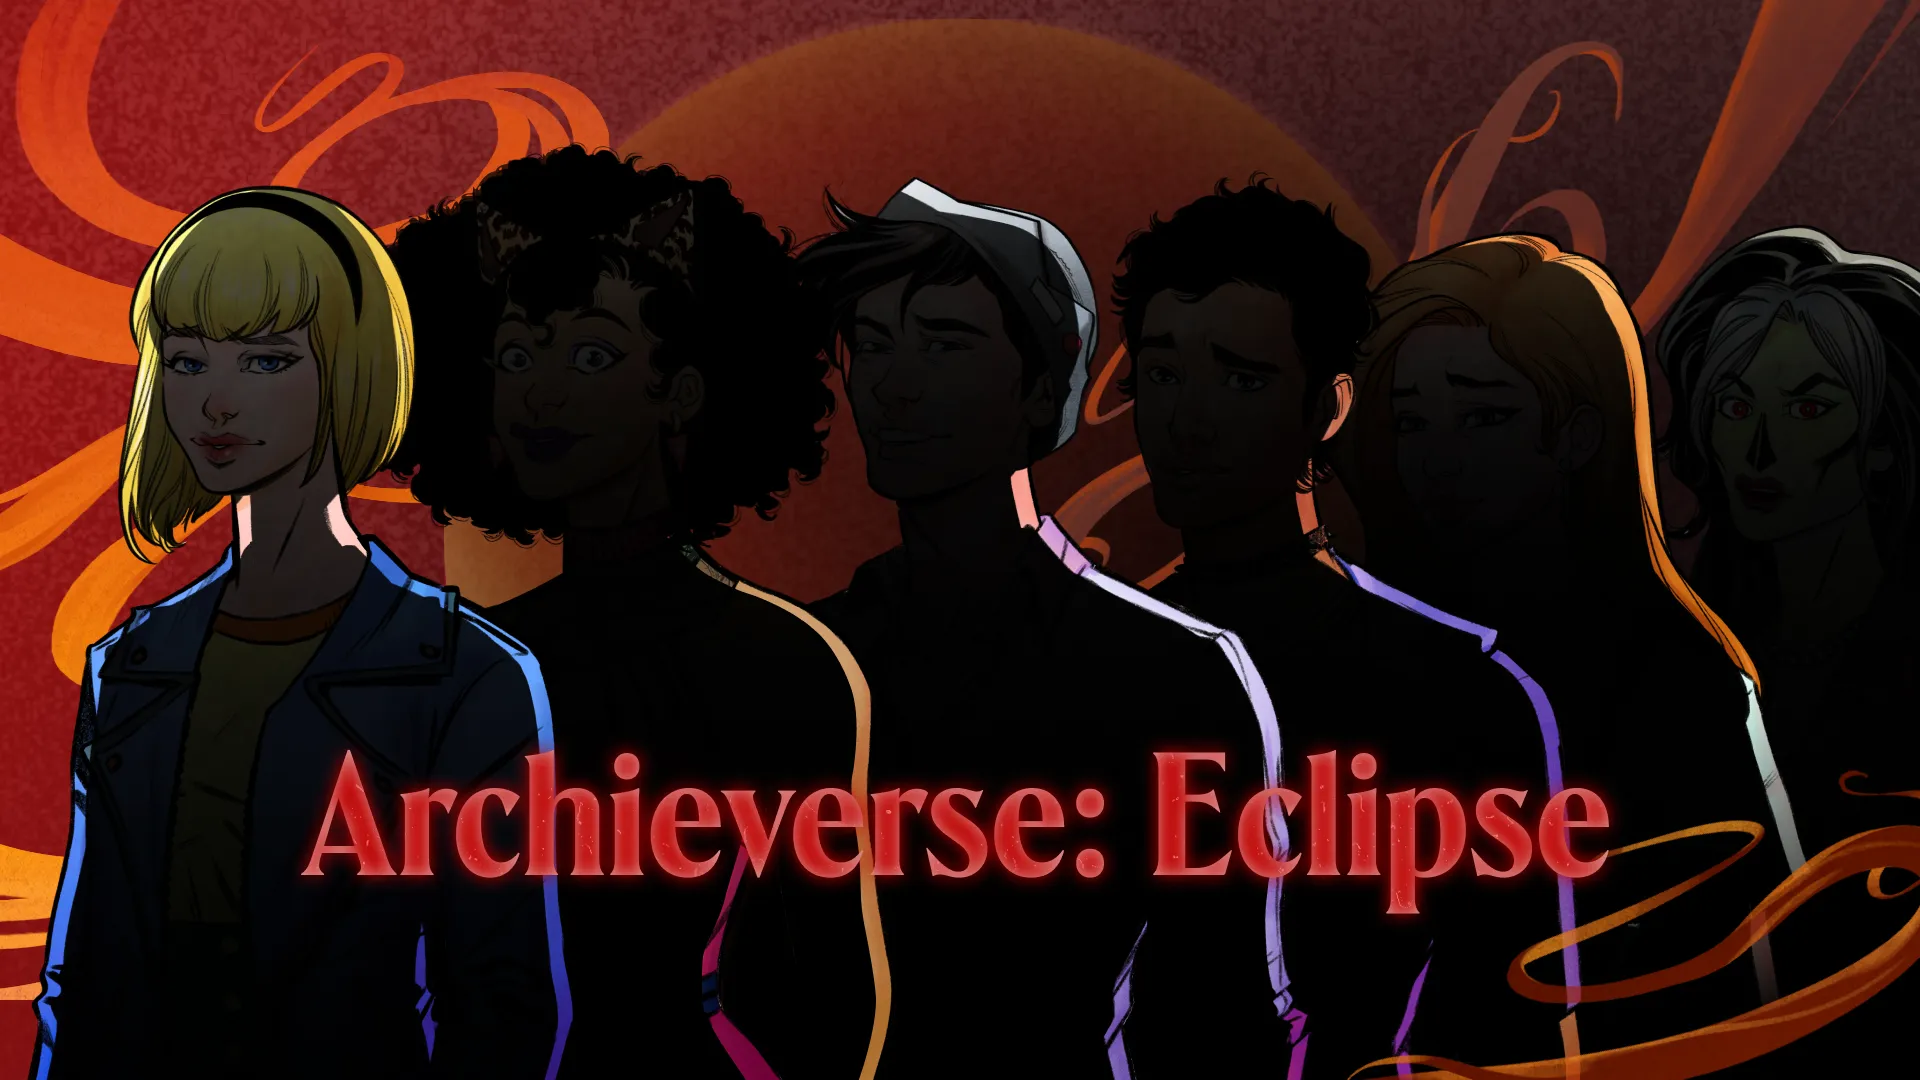 Un Archieverso en NFT: Imagen del teaser de Eclipse de Archie Comics